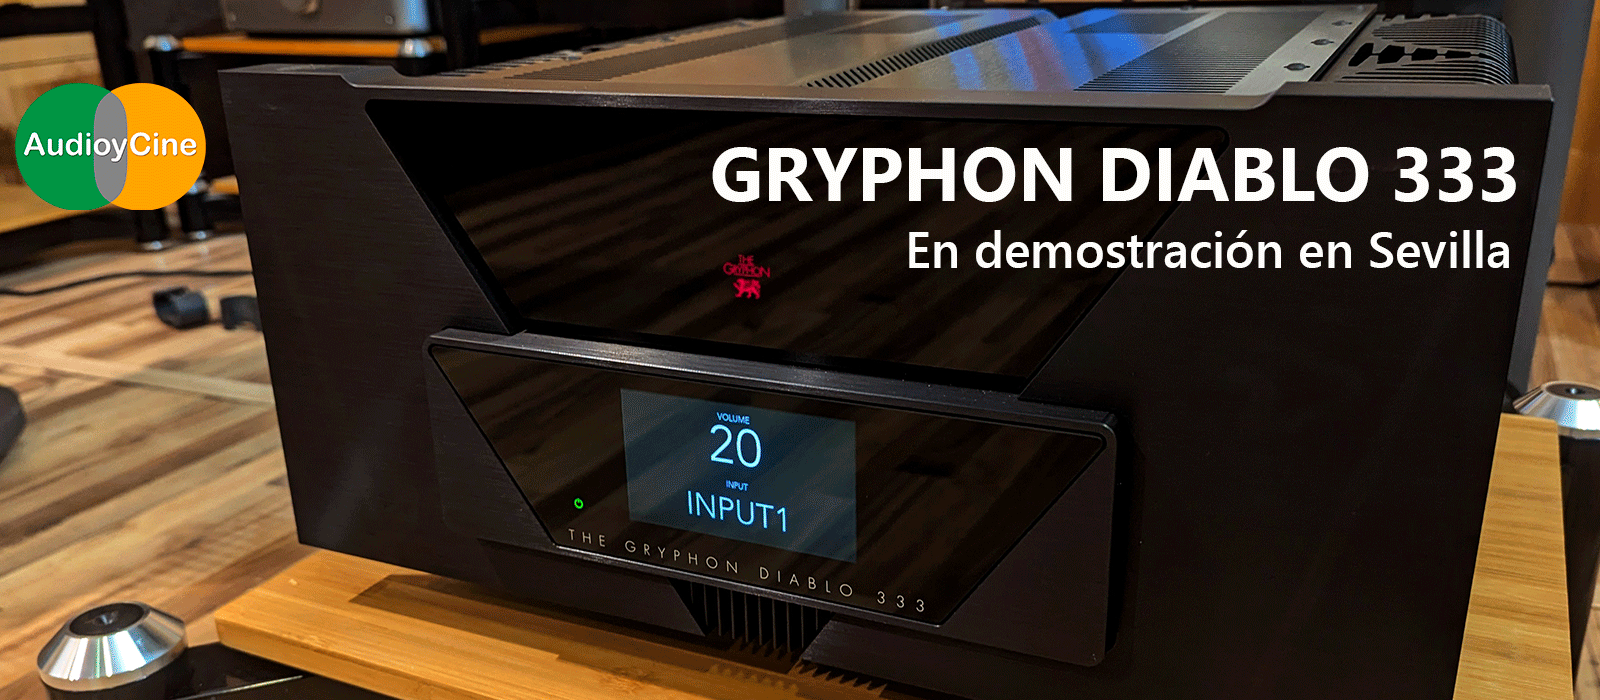 amplificador-Gryphon-Diablo-333-en-demostración-Sevilla-AudioyCine